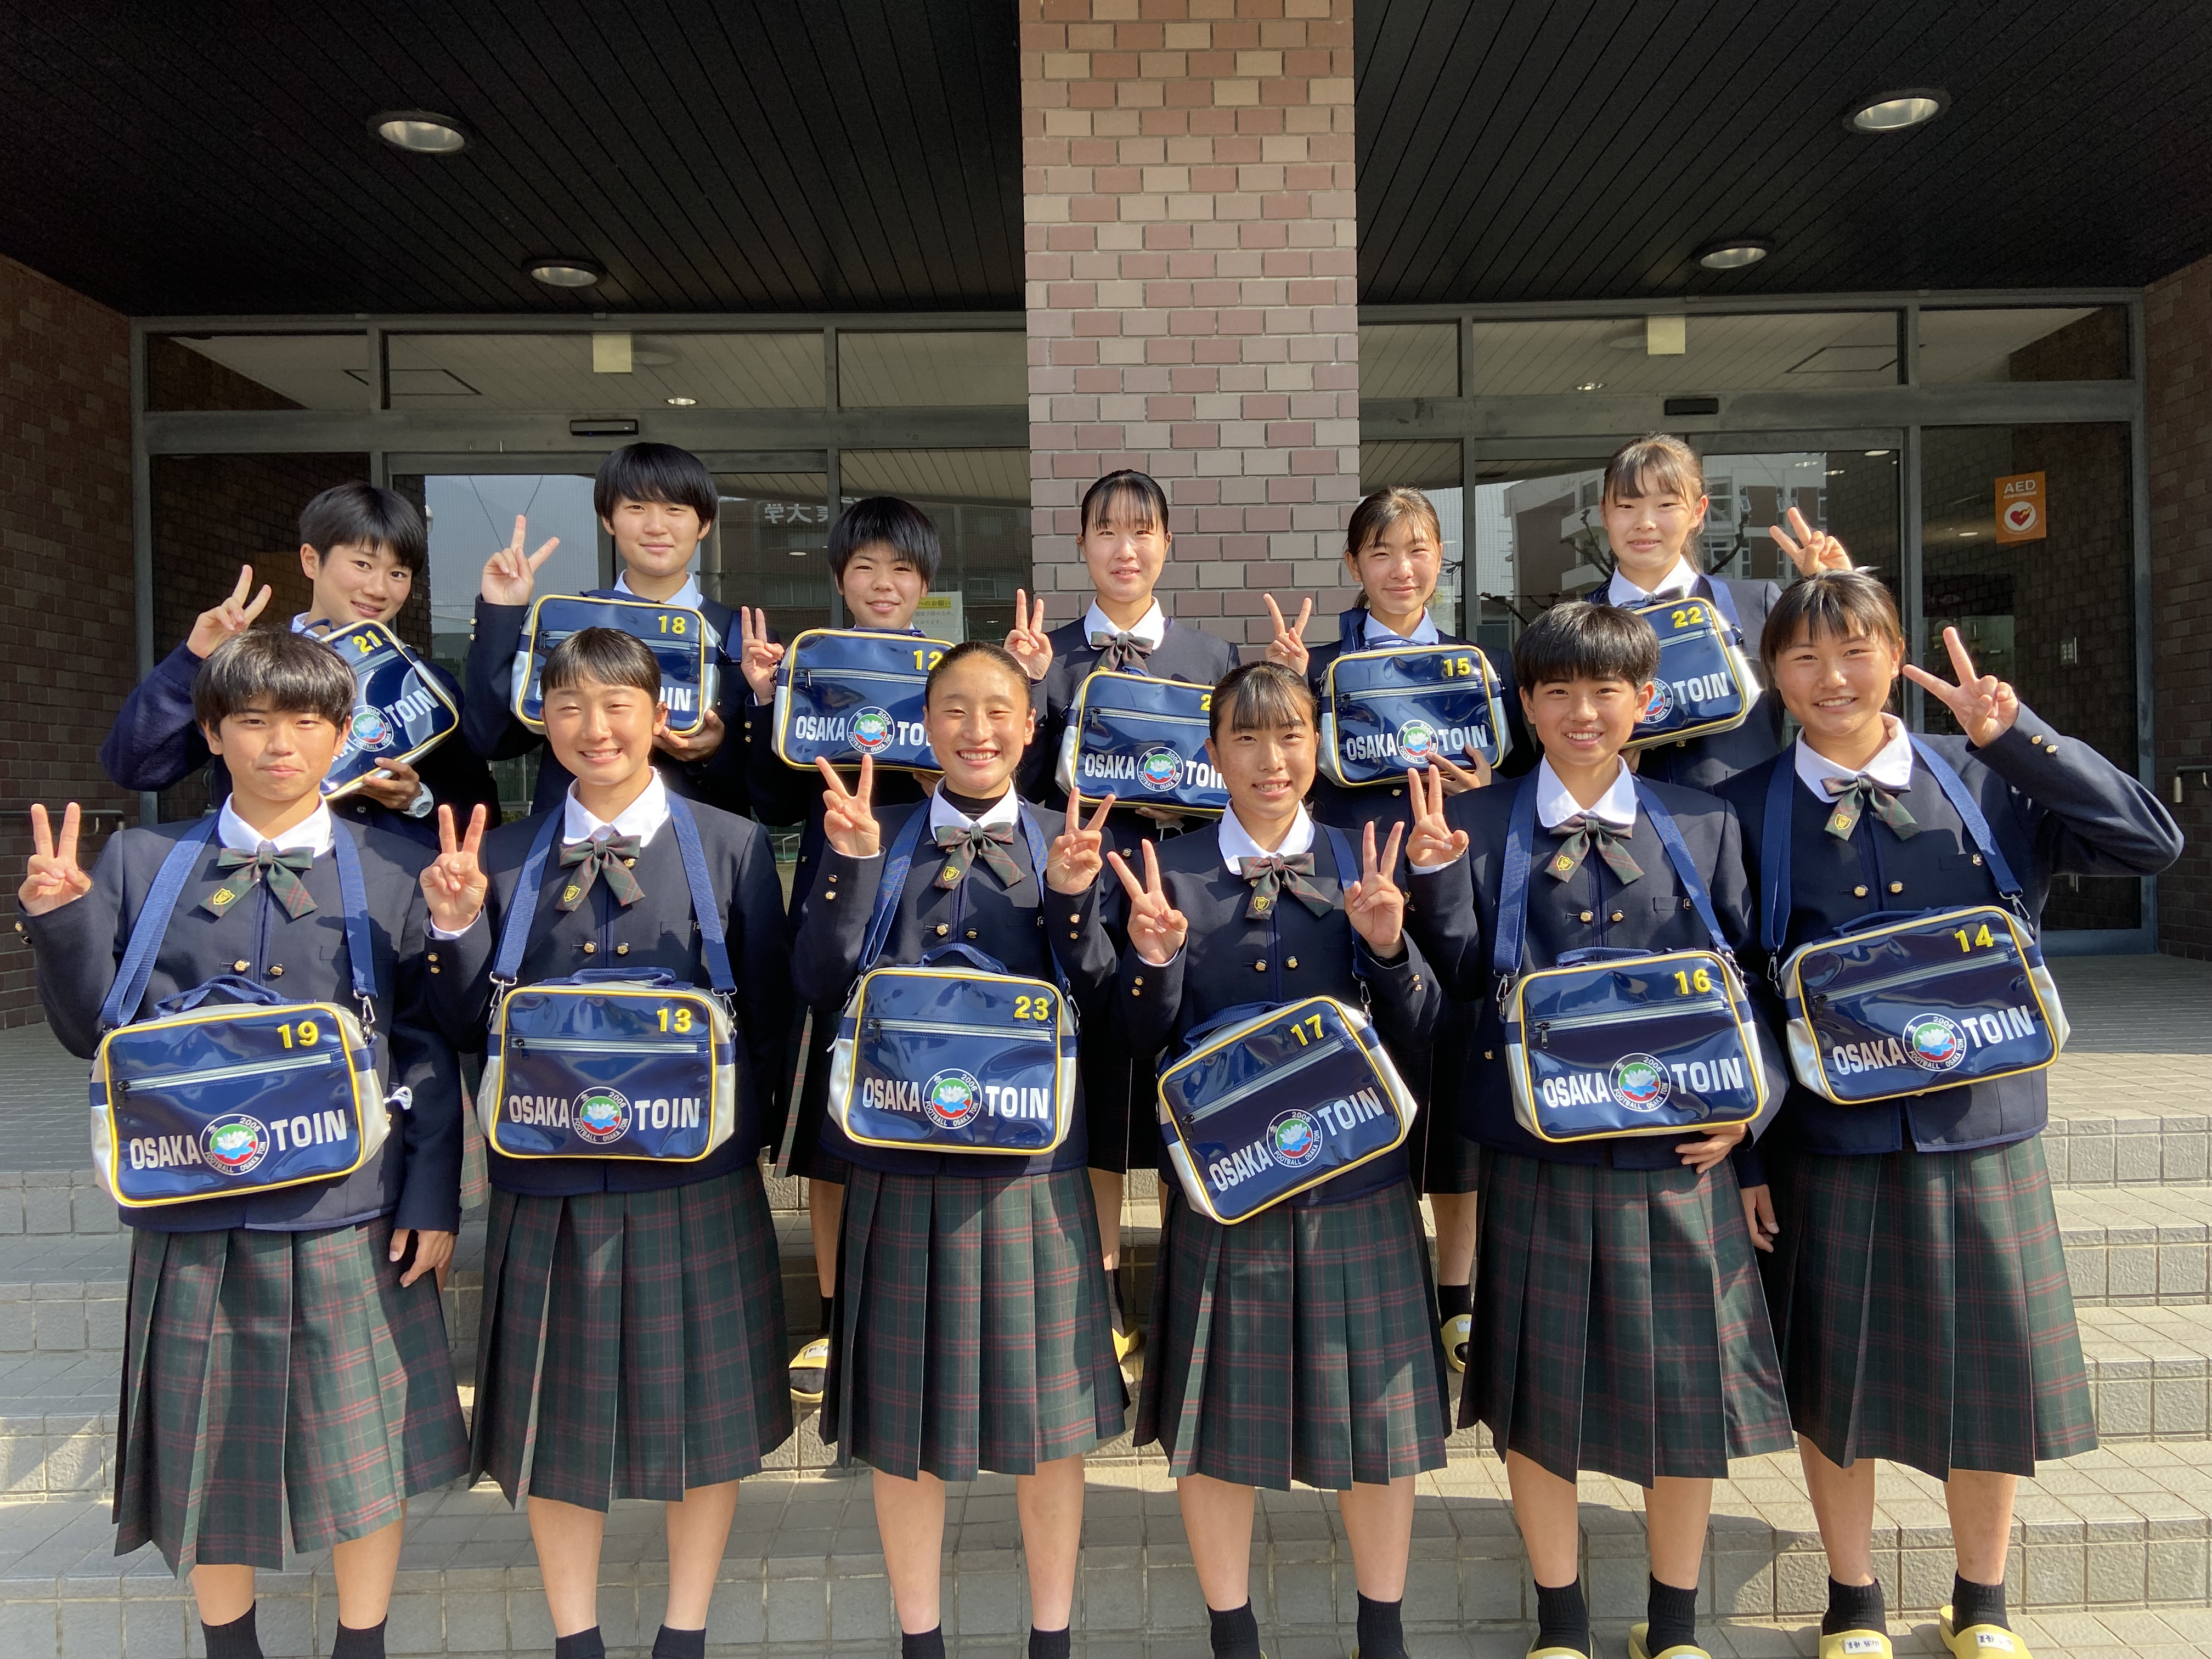 新入生ミニバック贈呈: 大阪桐蔭高校女子サッカーブログ